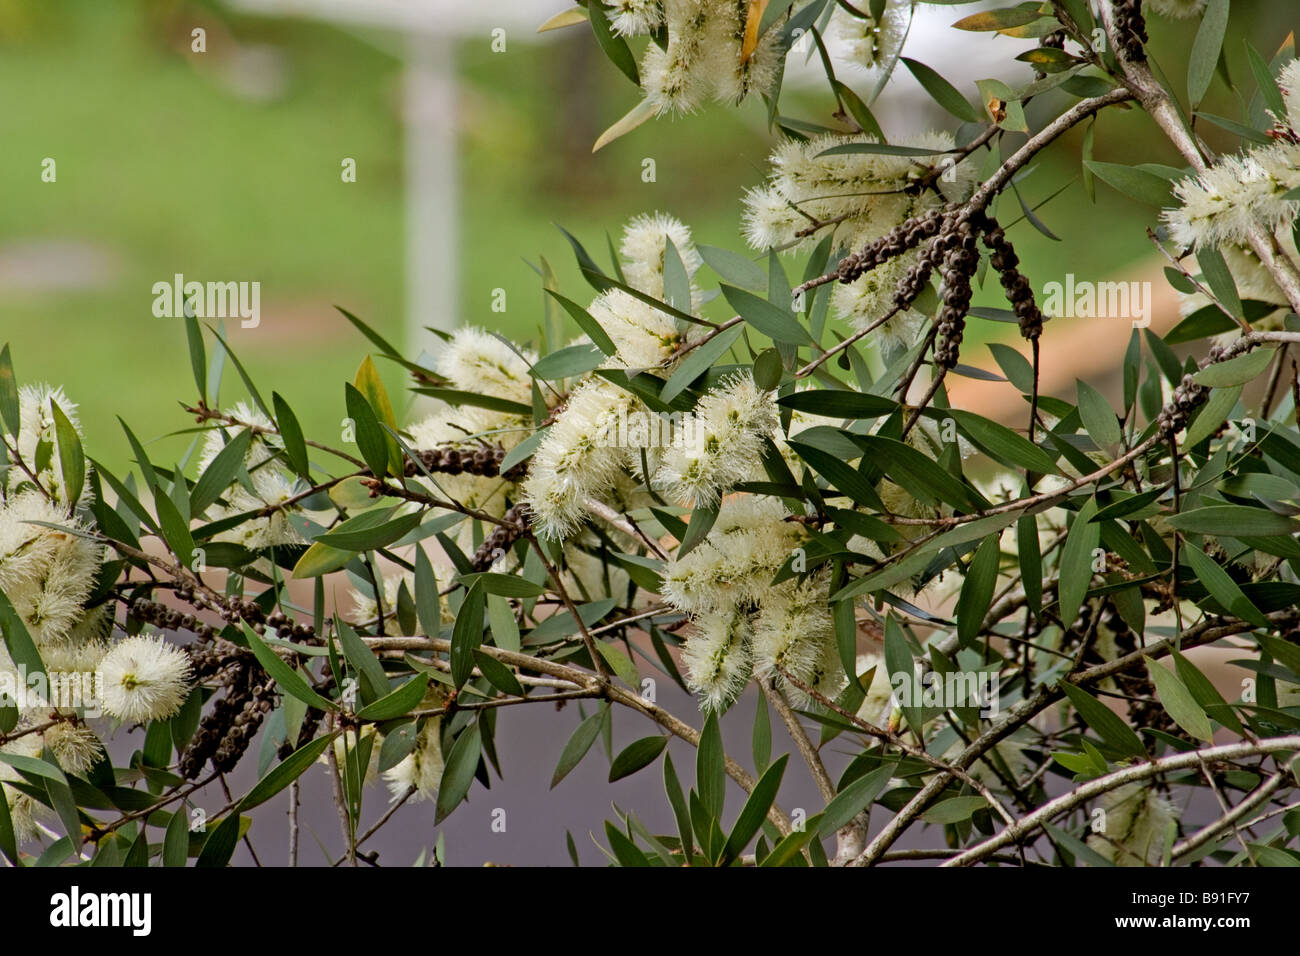 Melaleuca in bloom Stock Photo